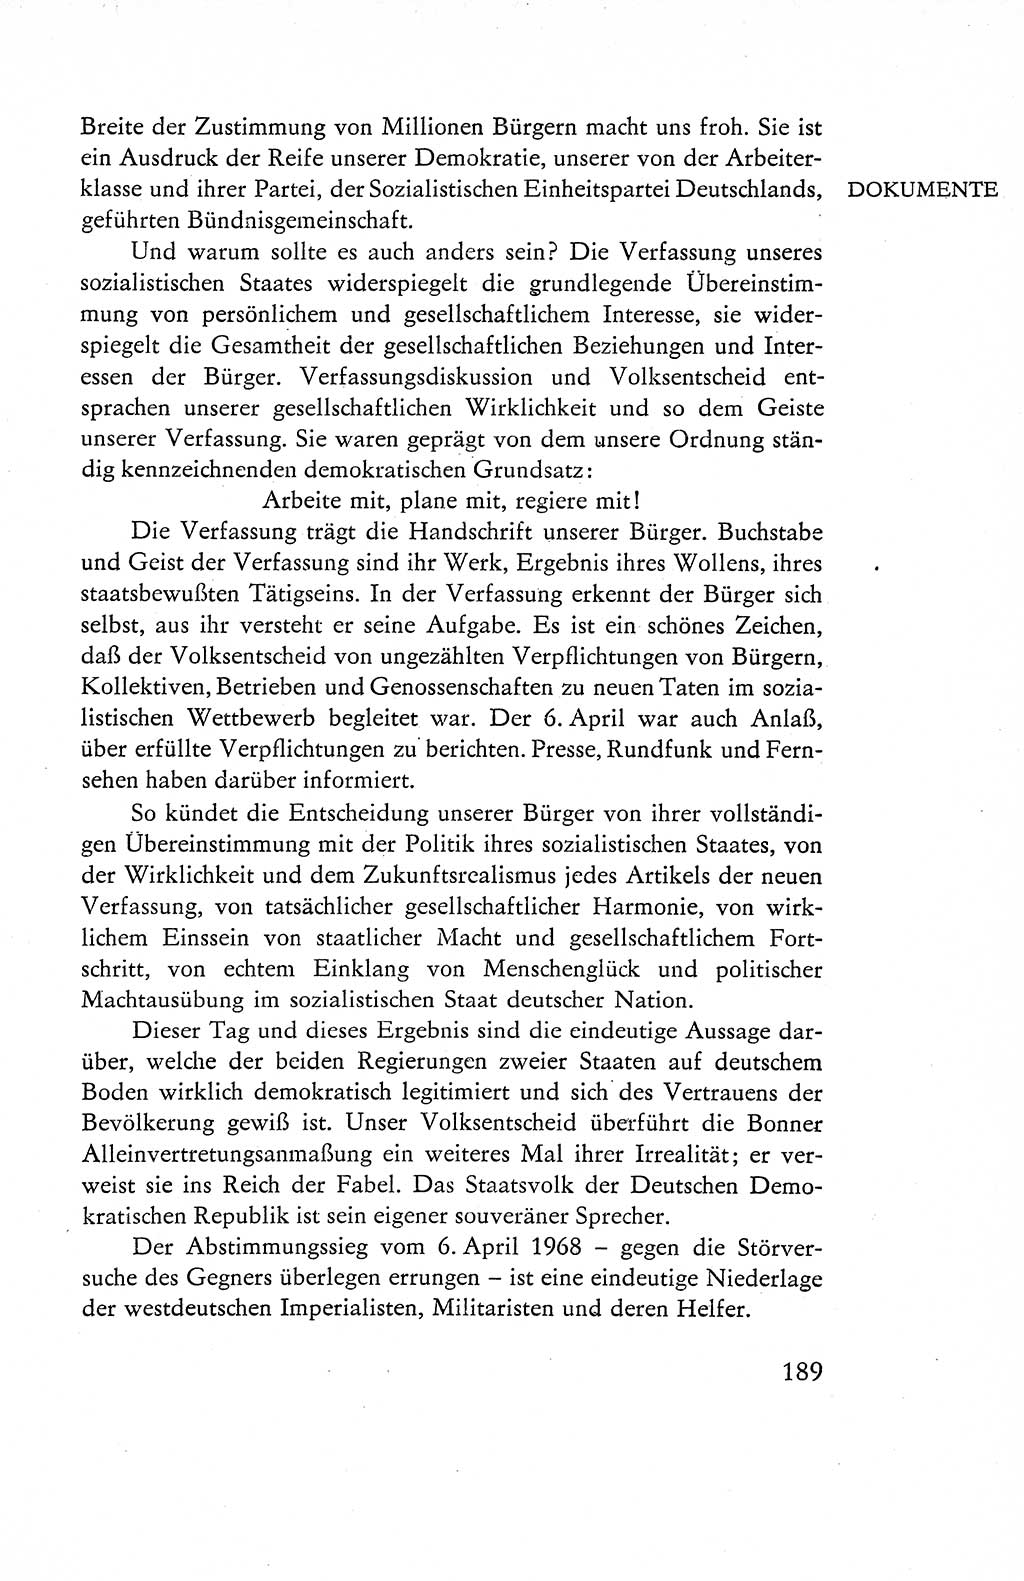 Verfassung der Deutschen Demokratischen Republik (DDR), Dokumente, Kommentar 1969, Band 1, Seite 189 (Verf. DDR Dok. Komm. 1969, Bd. 1, S. 189)